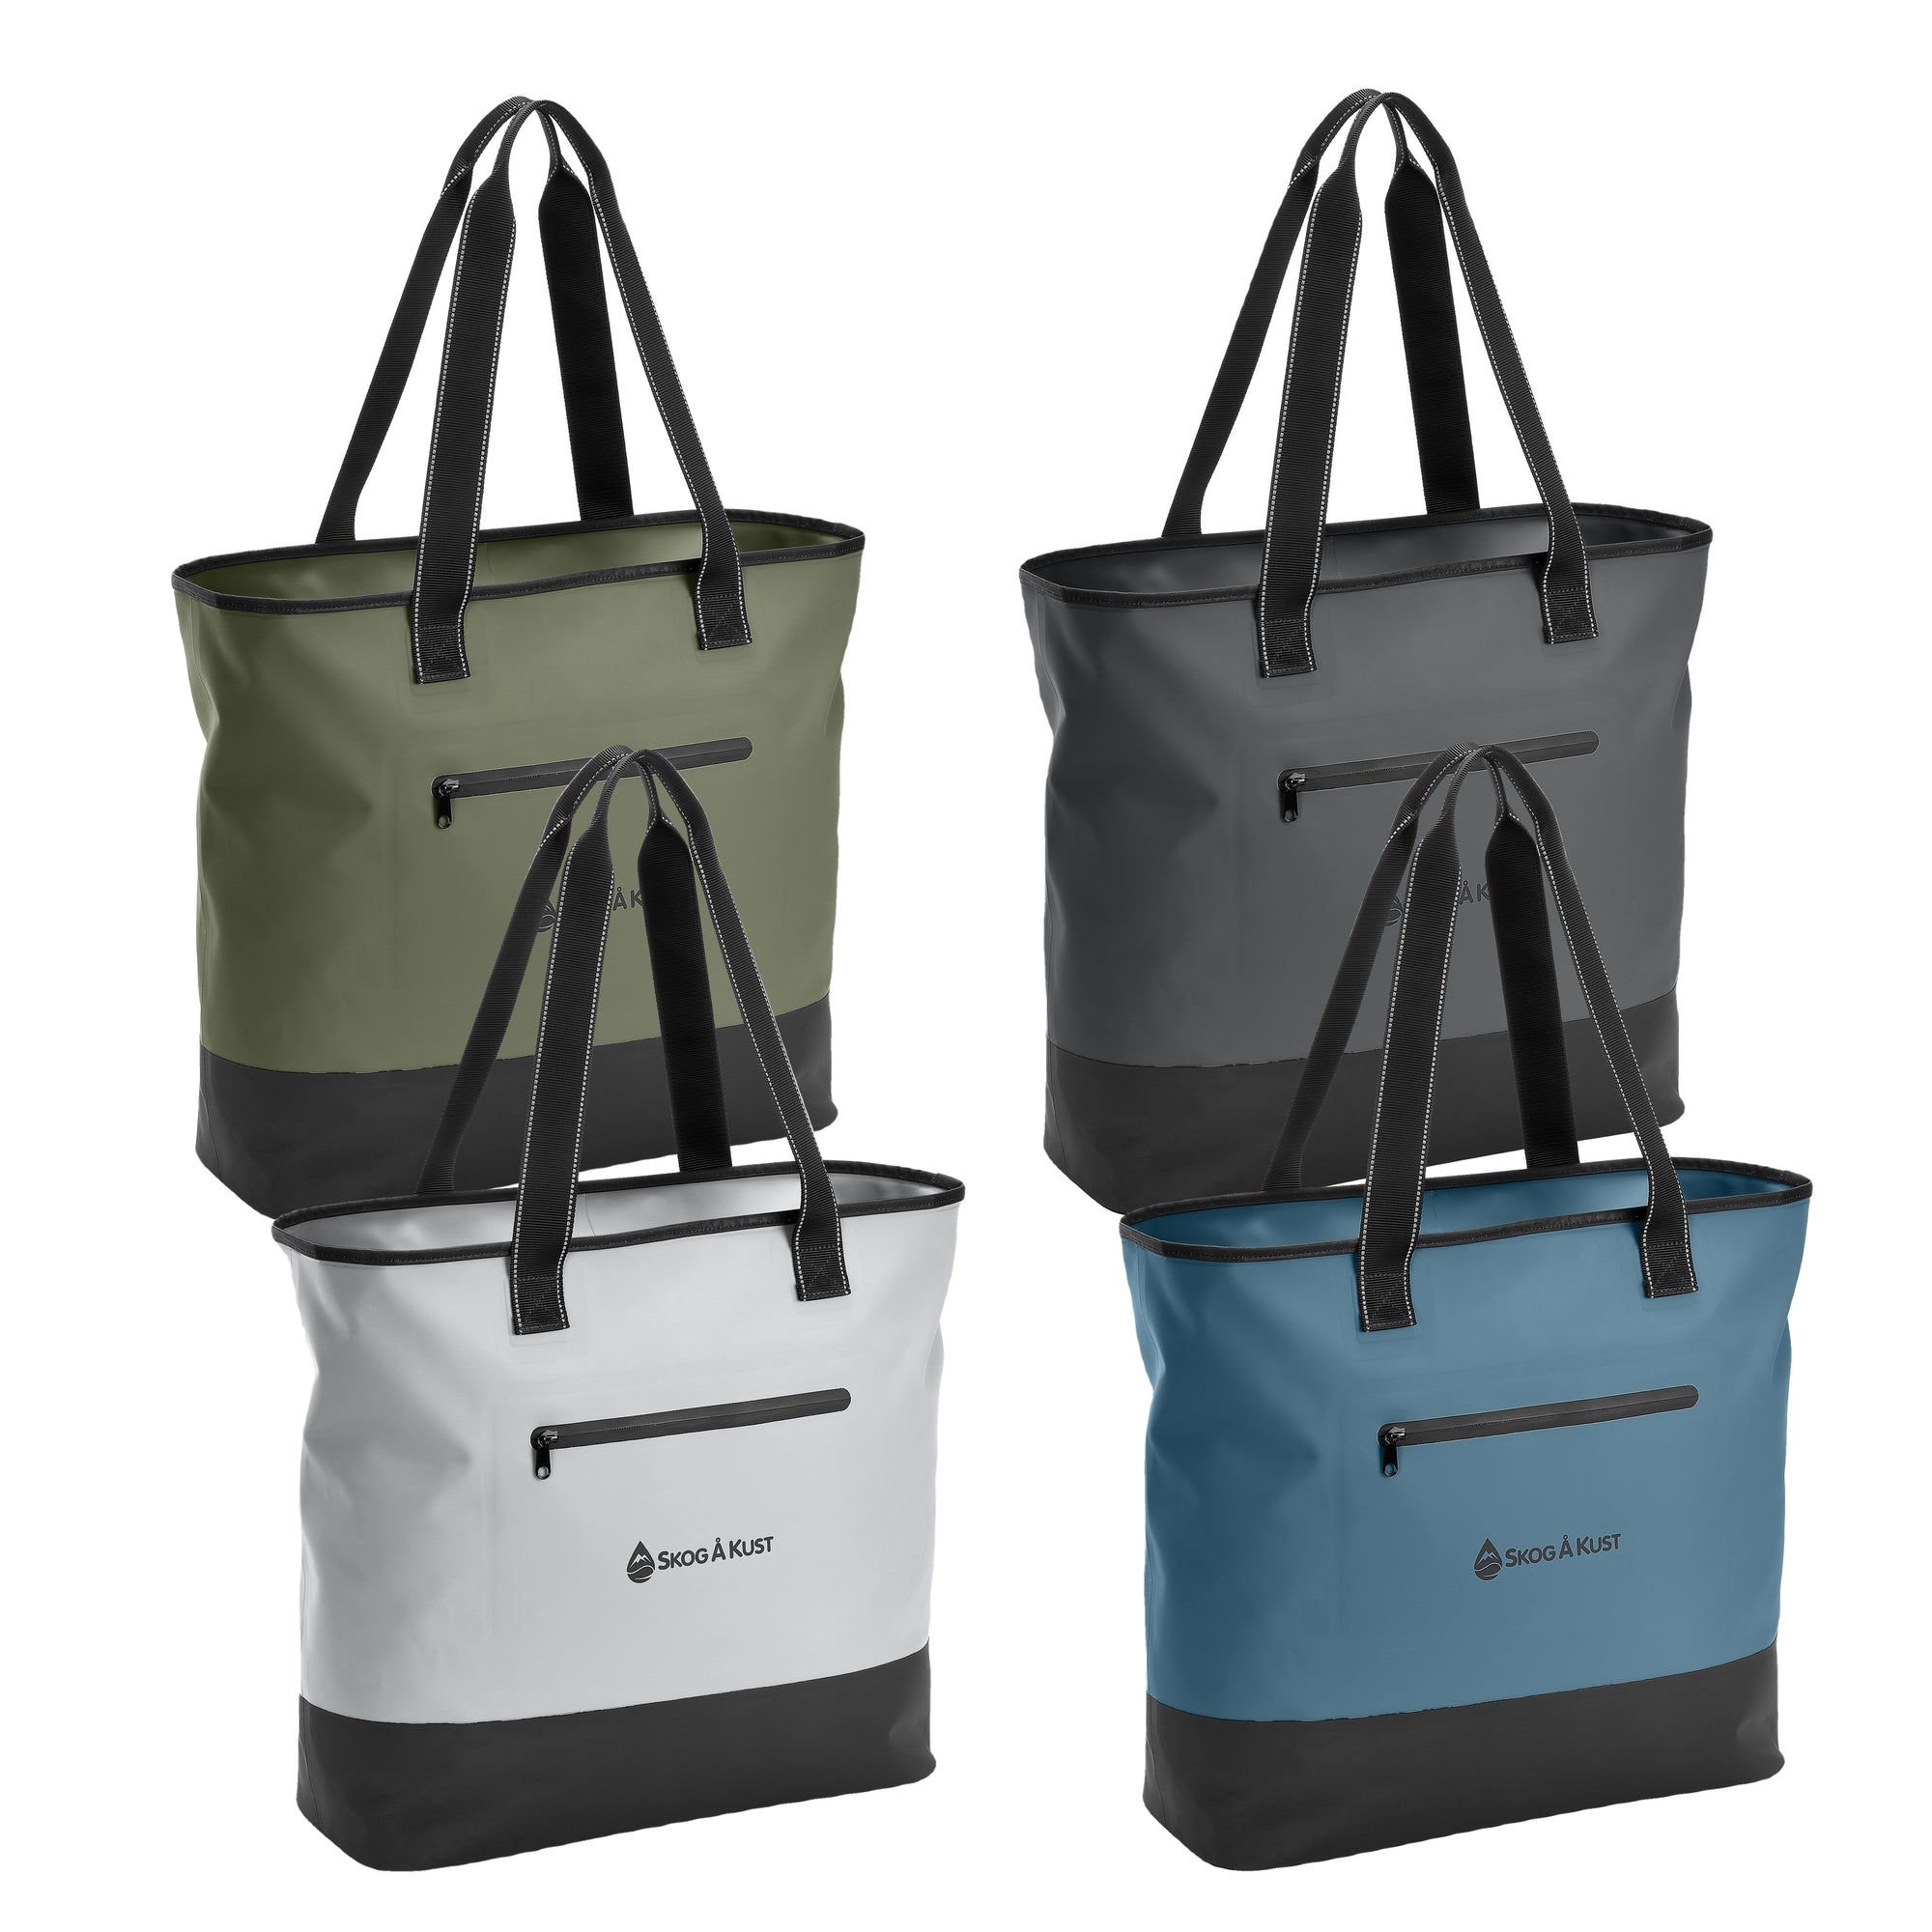 Buy TOTESÅK Premium Waterproof Dry Bags Online – Skog Å Kust